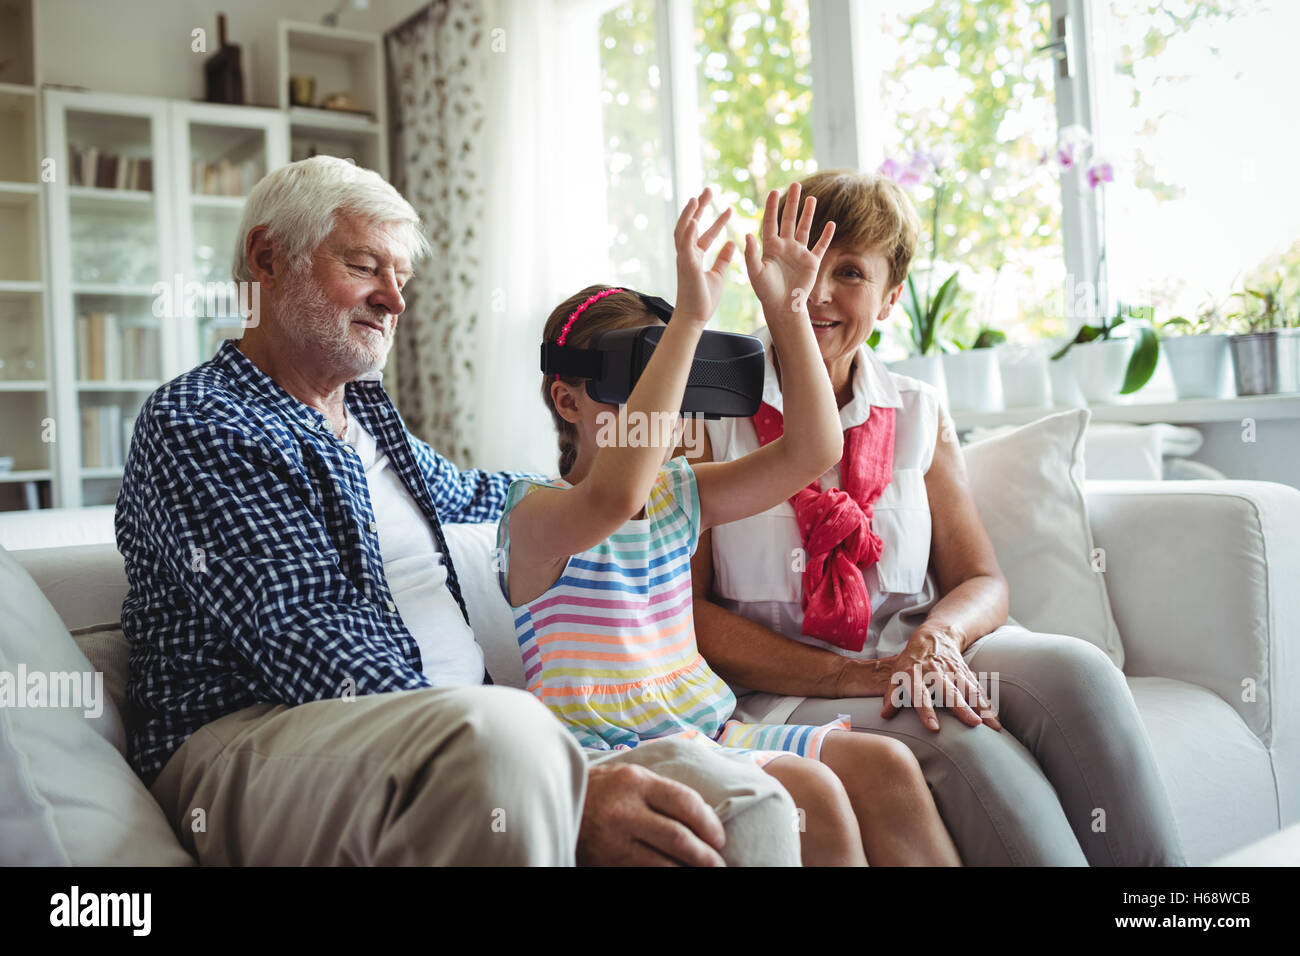 Petite-fille à l'aide de casque de réalité virtuelle avec ses grands-parents dans la salle de séjour Banque D'Images